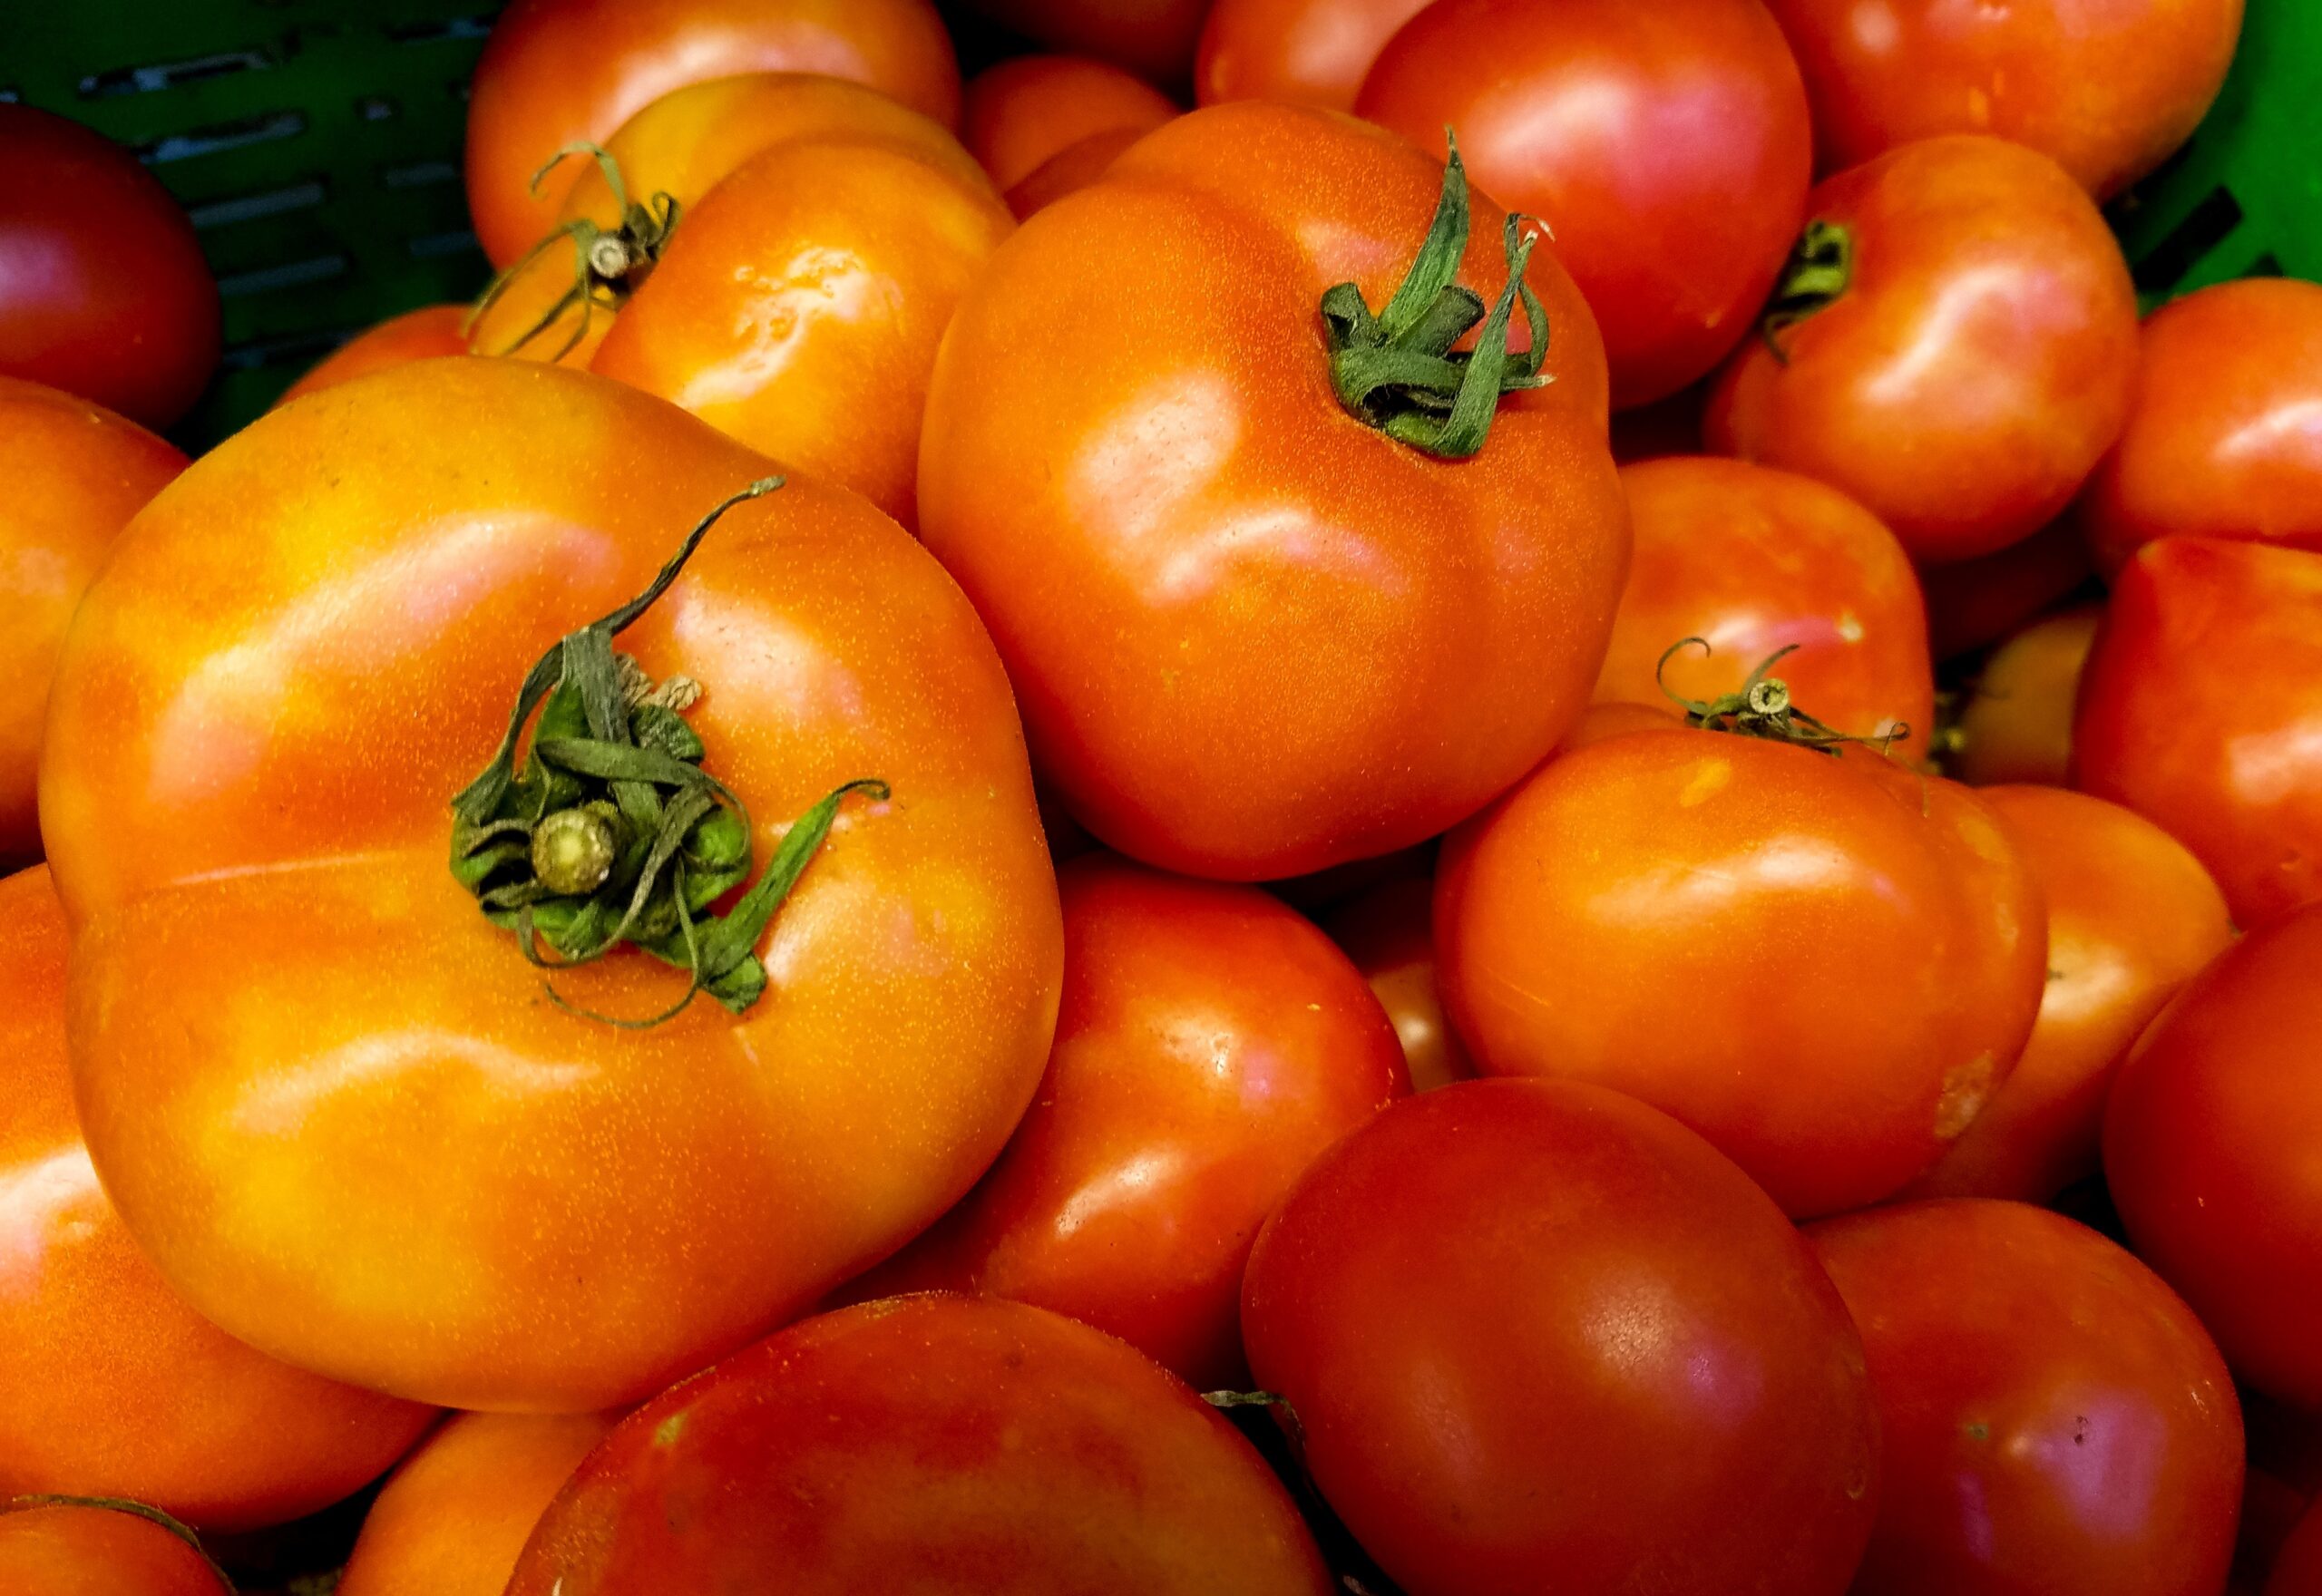 ТОП-5 найкращих сортів помідорів